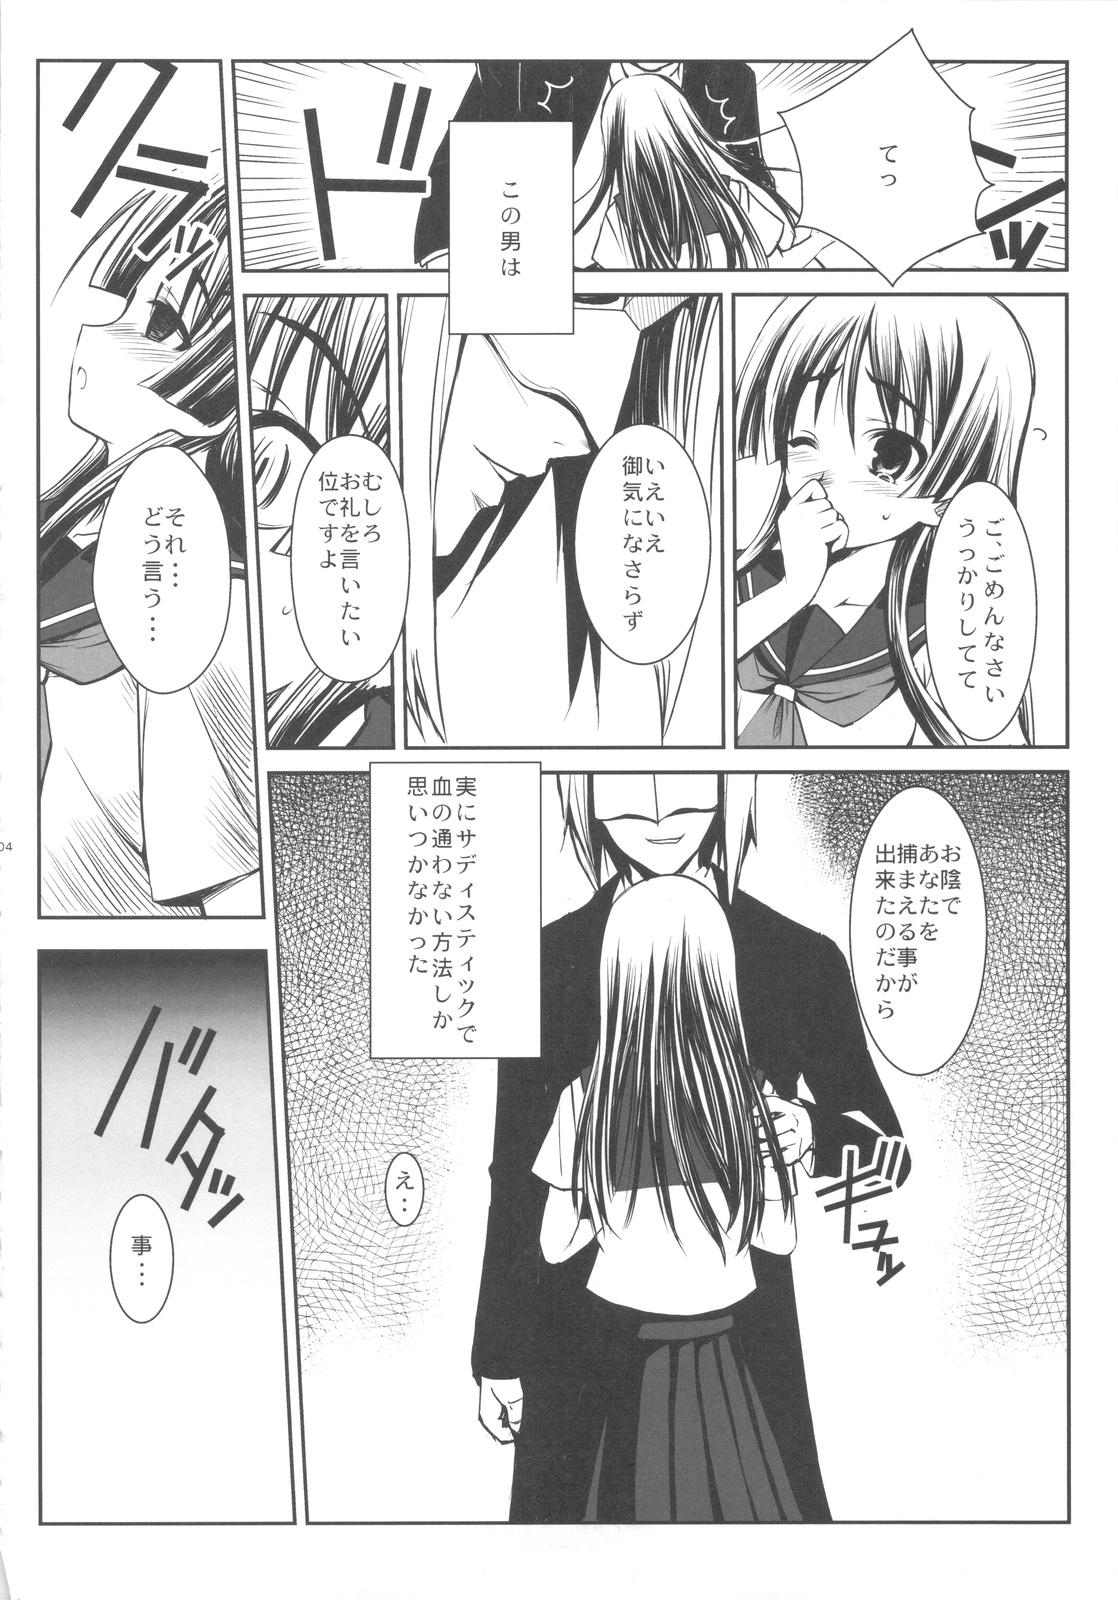 Highschool ERECTLIC THUNDER - Toaru kagaku no railgun Pure18 - Page 4